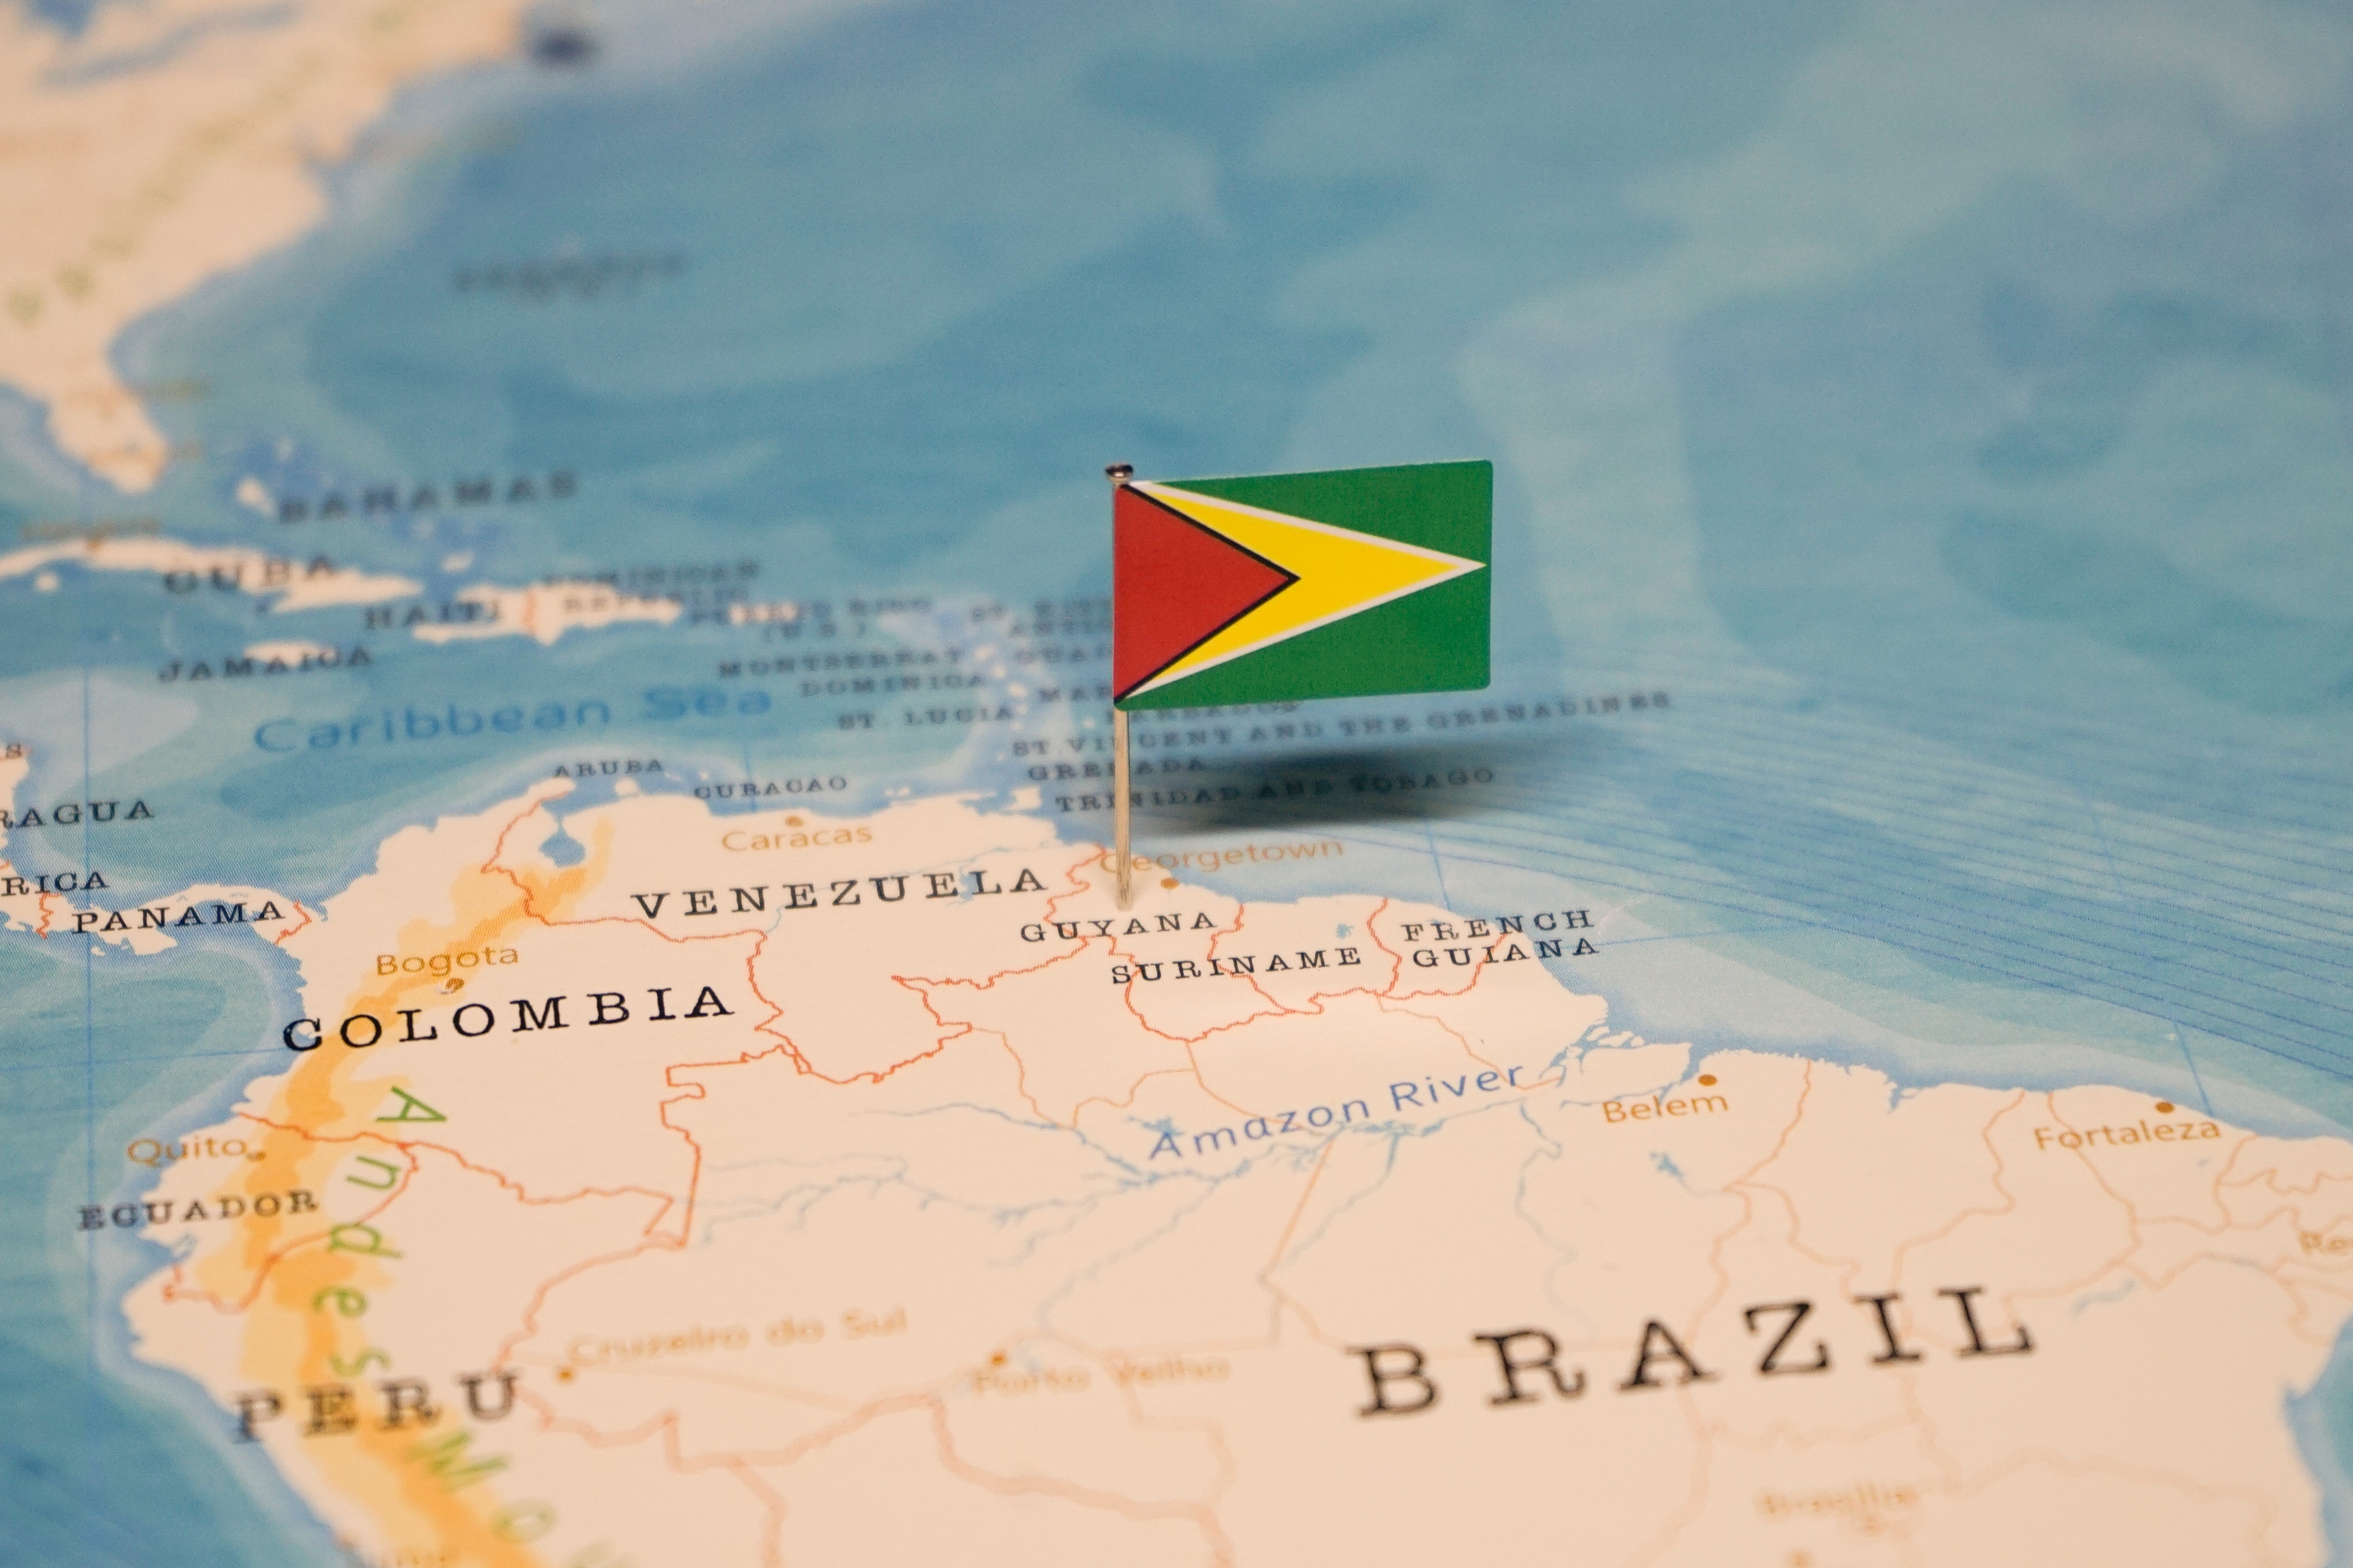     La France ouvre une ambassade au Guyana, petit pays riche en pétrole

